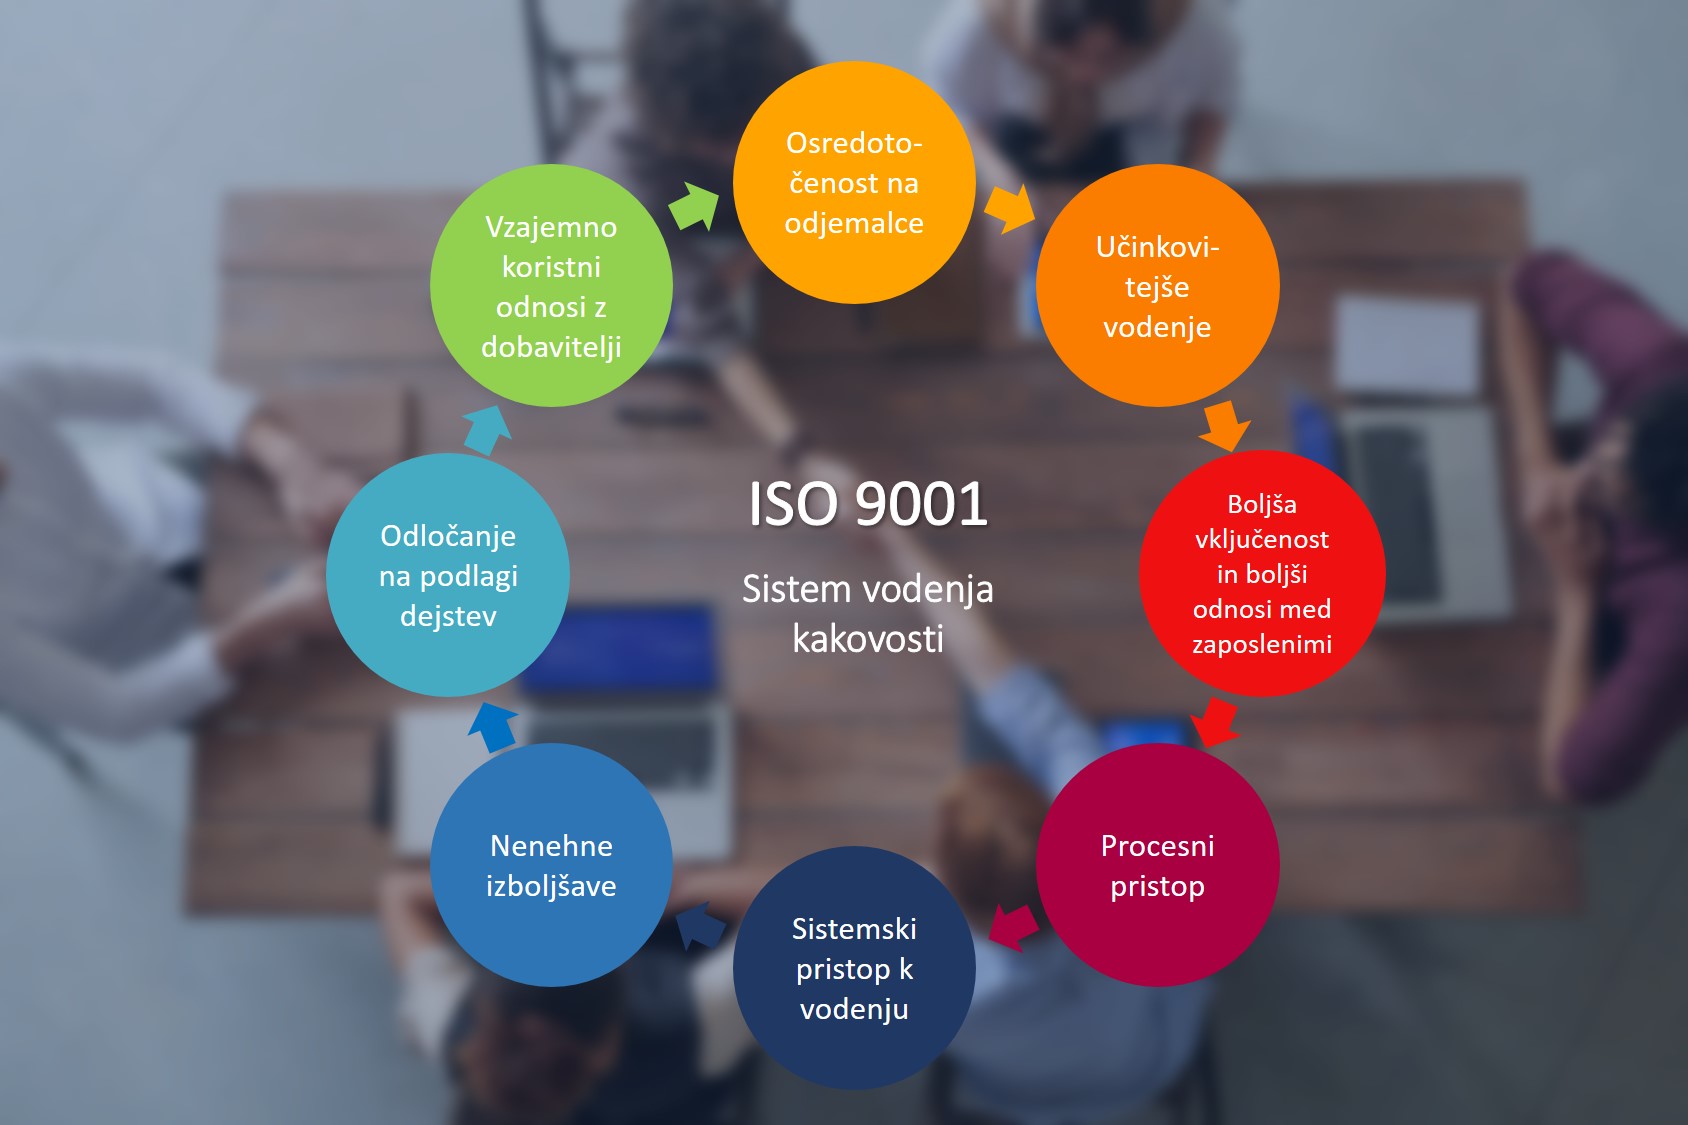 ISO 9001 - Sistem vodenja kakovosti: osredotočenost na odjemalce, učinkovitejše vodenje, boljša vključenost in boljši odnosi med zaposlenimi, procesni pristop, sistemski pristop k vodenju, nenehne izboljšave, odločanje na podlagi dejstev, vzajemno koristni odnosi z dobavitelji.